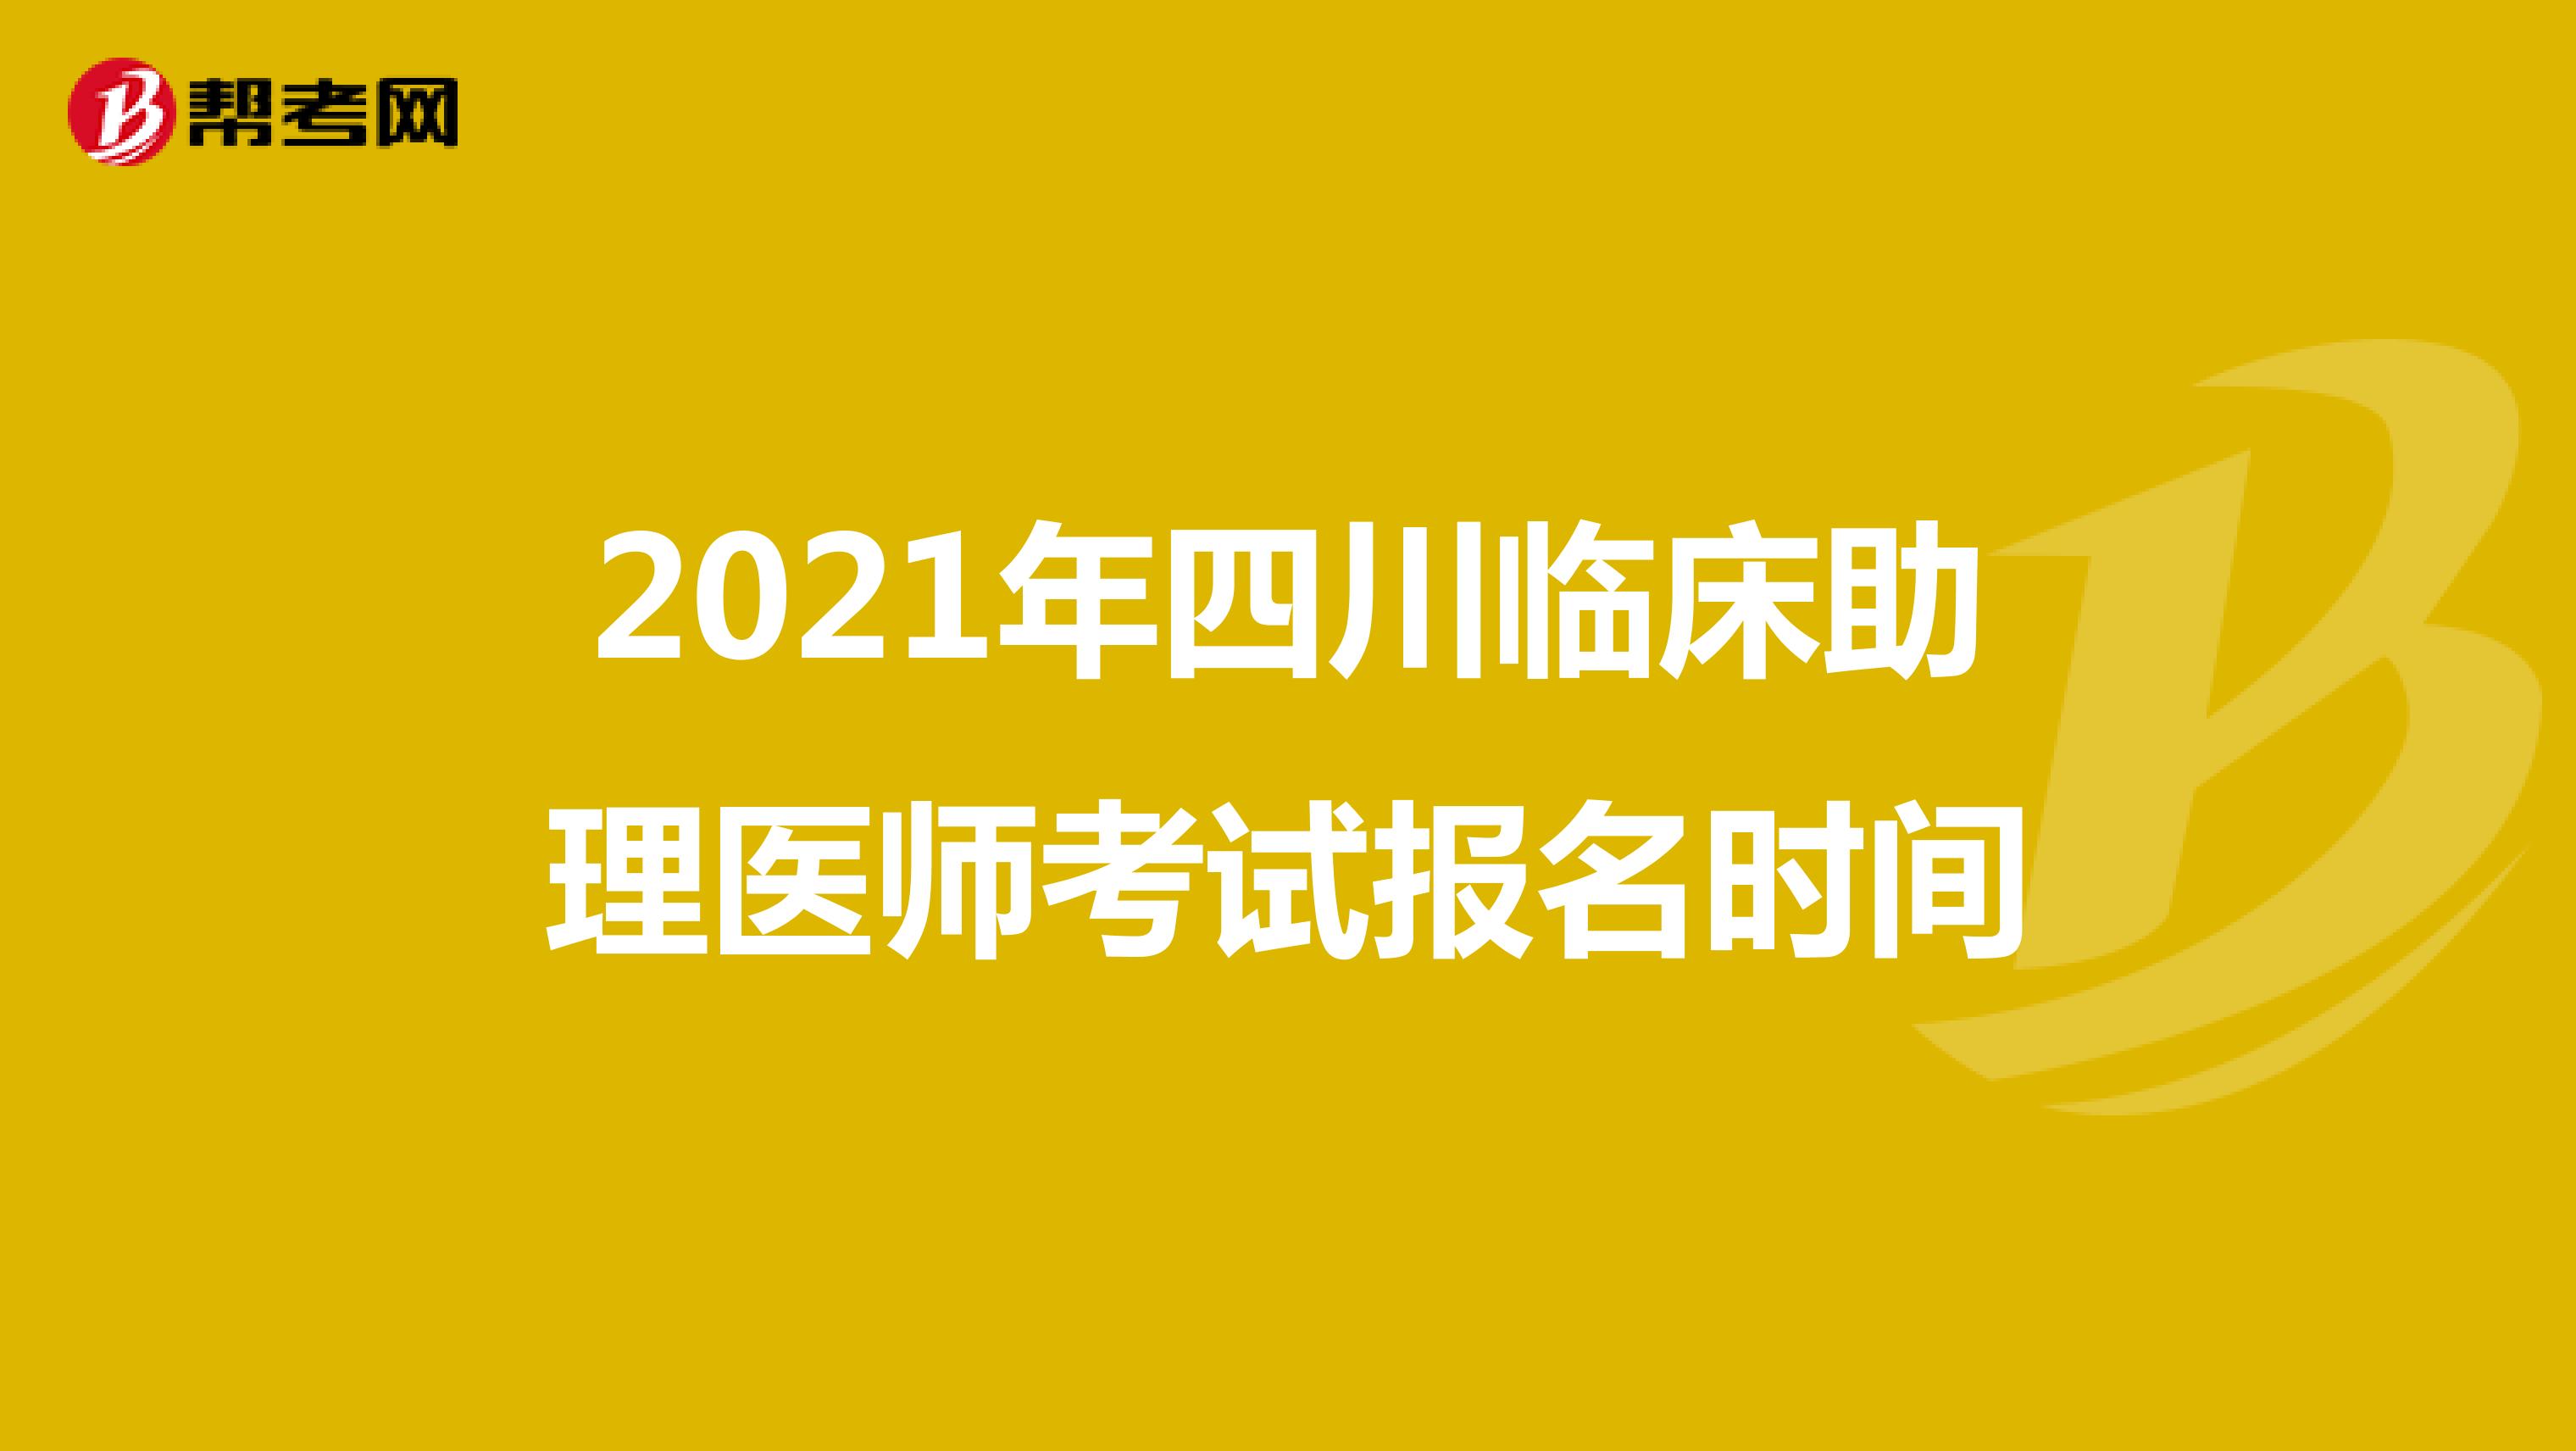 2021年四川临床助理医师考试报名时间